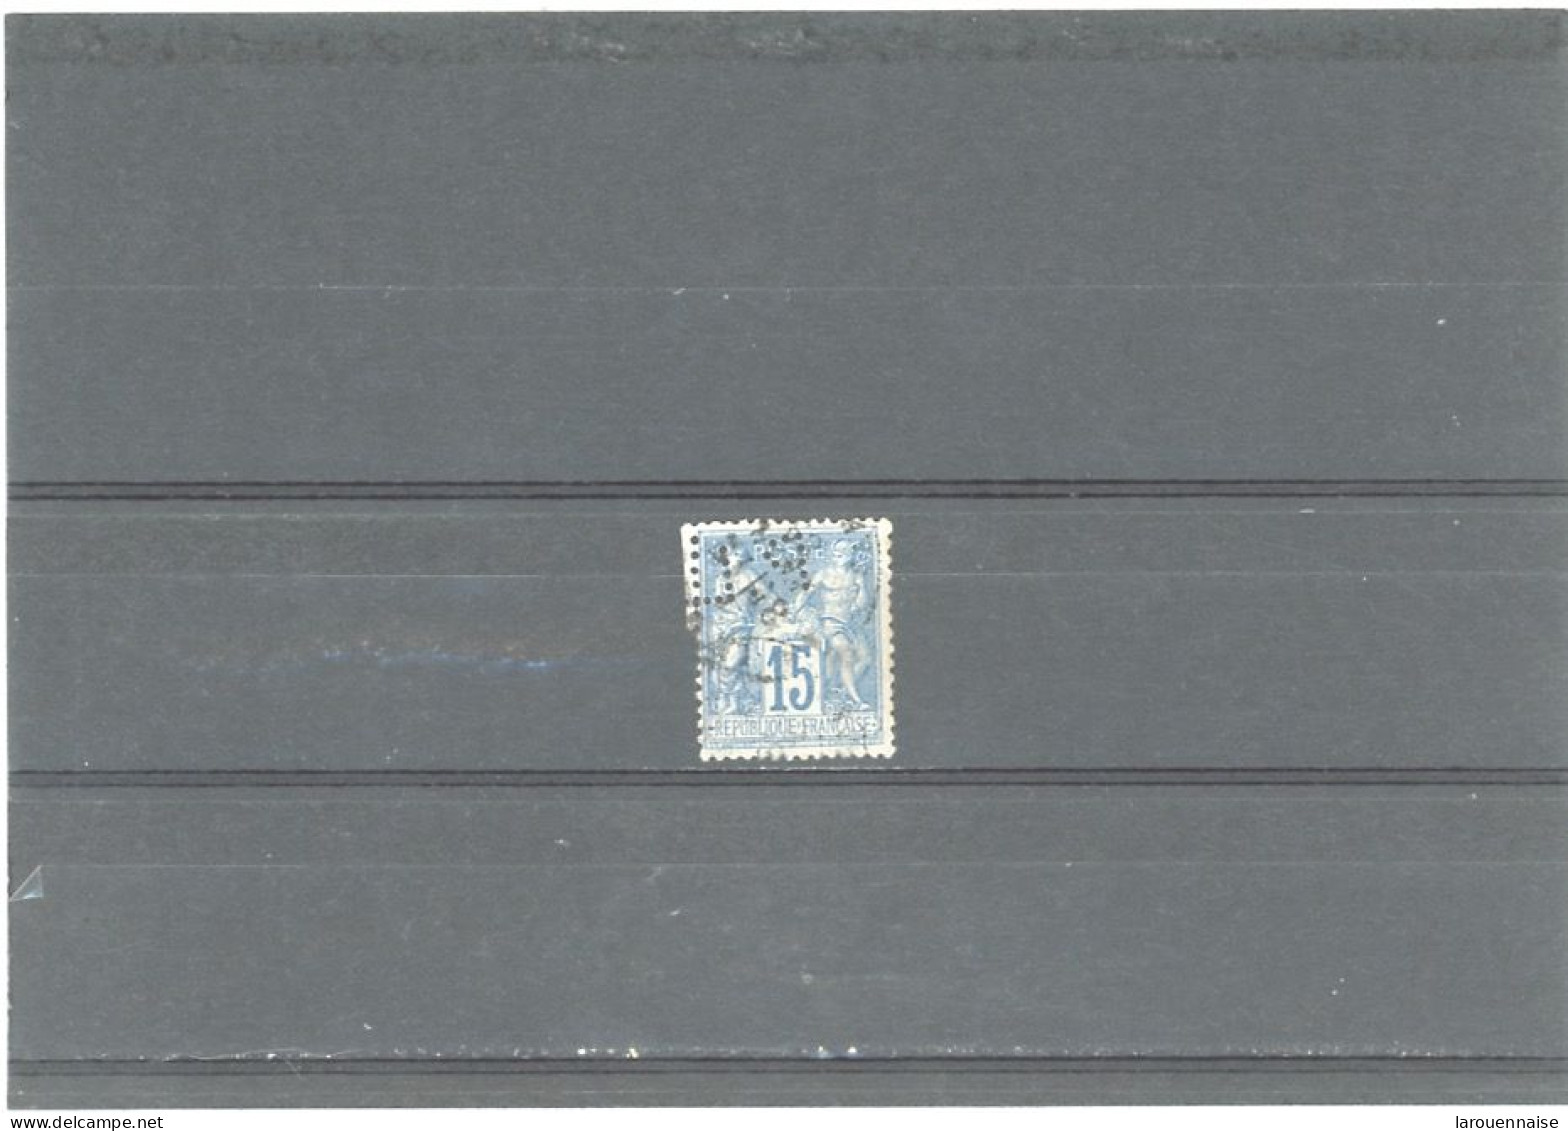 PERFORÉ- N°90 PERFORÉ PL-PORTET LAVIGERIE - BANQUE -LE MANS (72) - ANCOPER PL 93 - C7 - Used Stamps